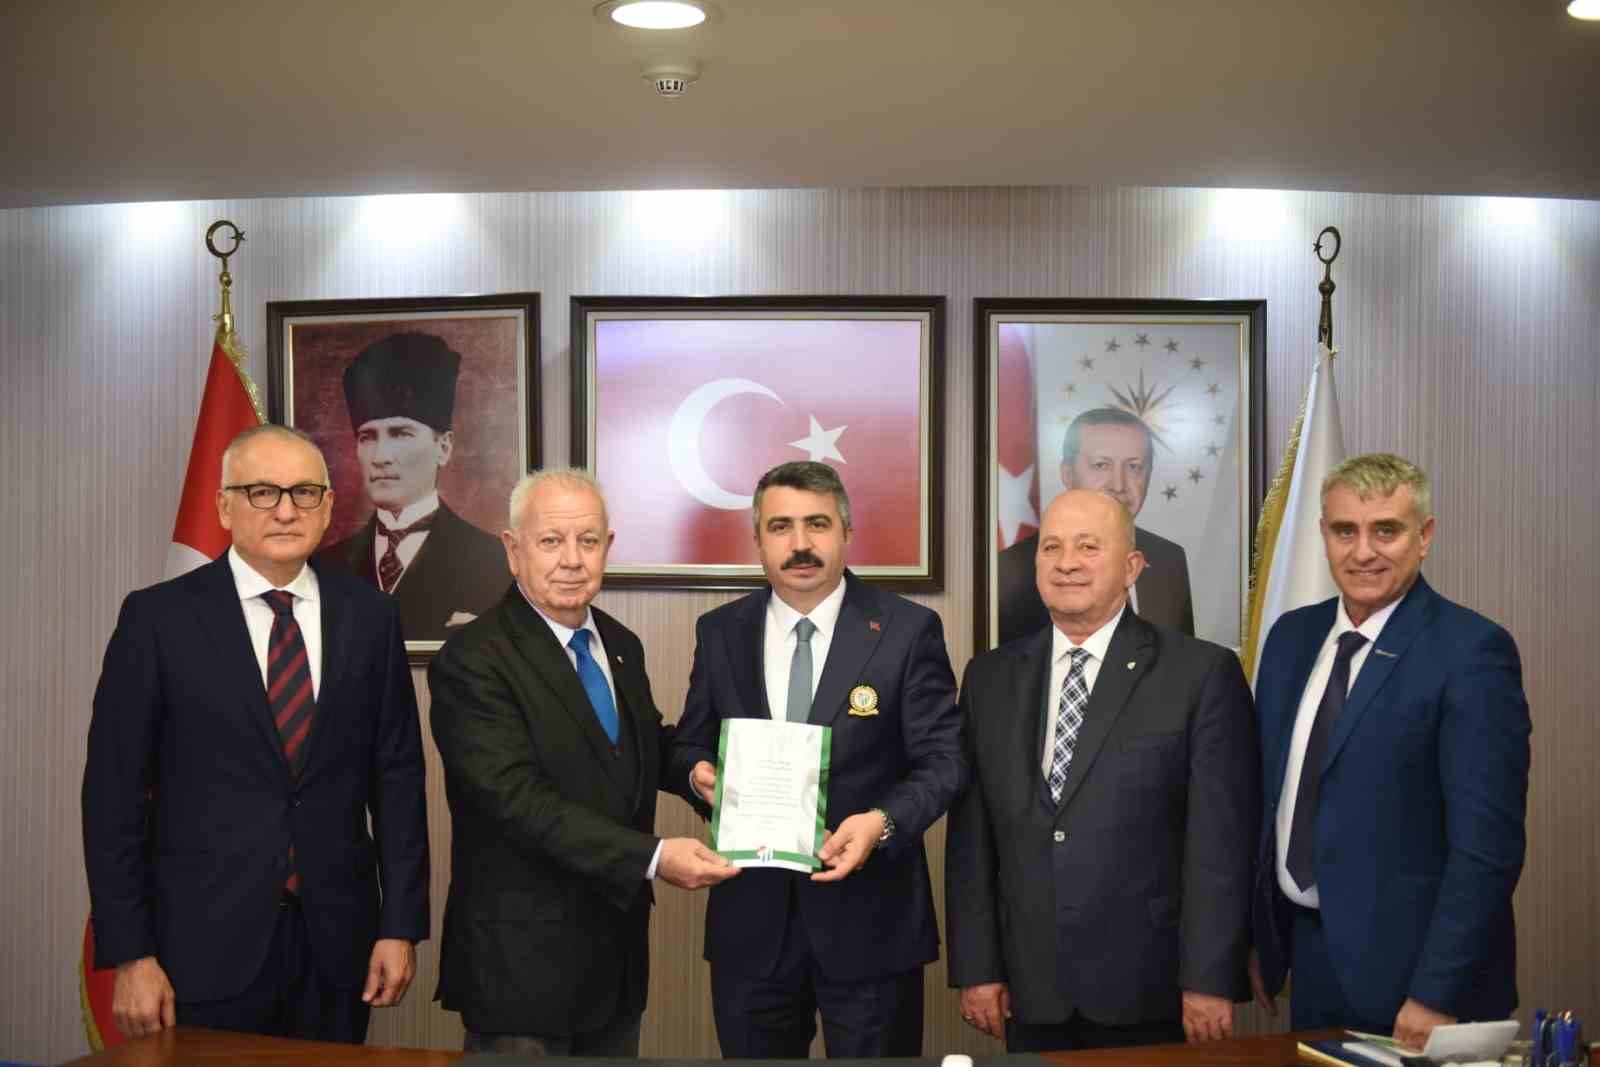 Bursaspor Divan Kurulu, önemli ziyaretler gerçekleştirdi
